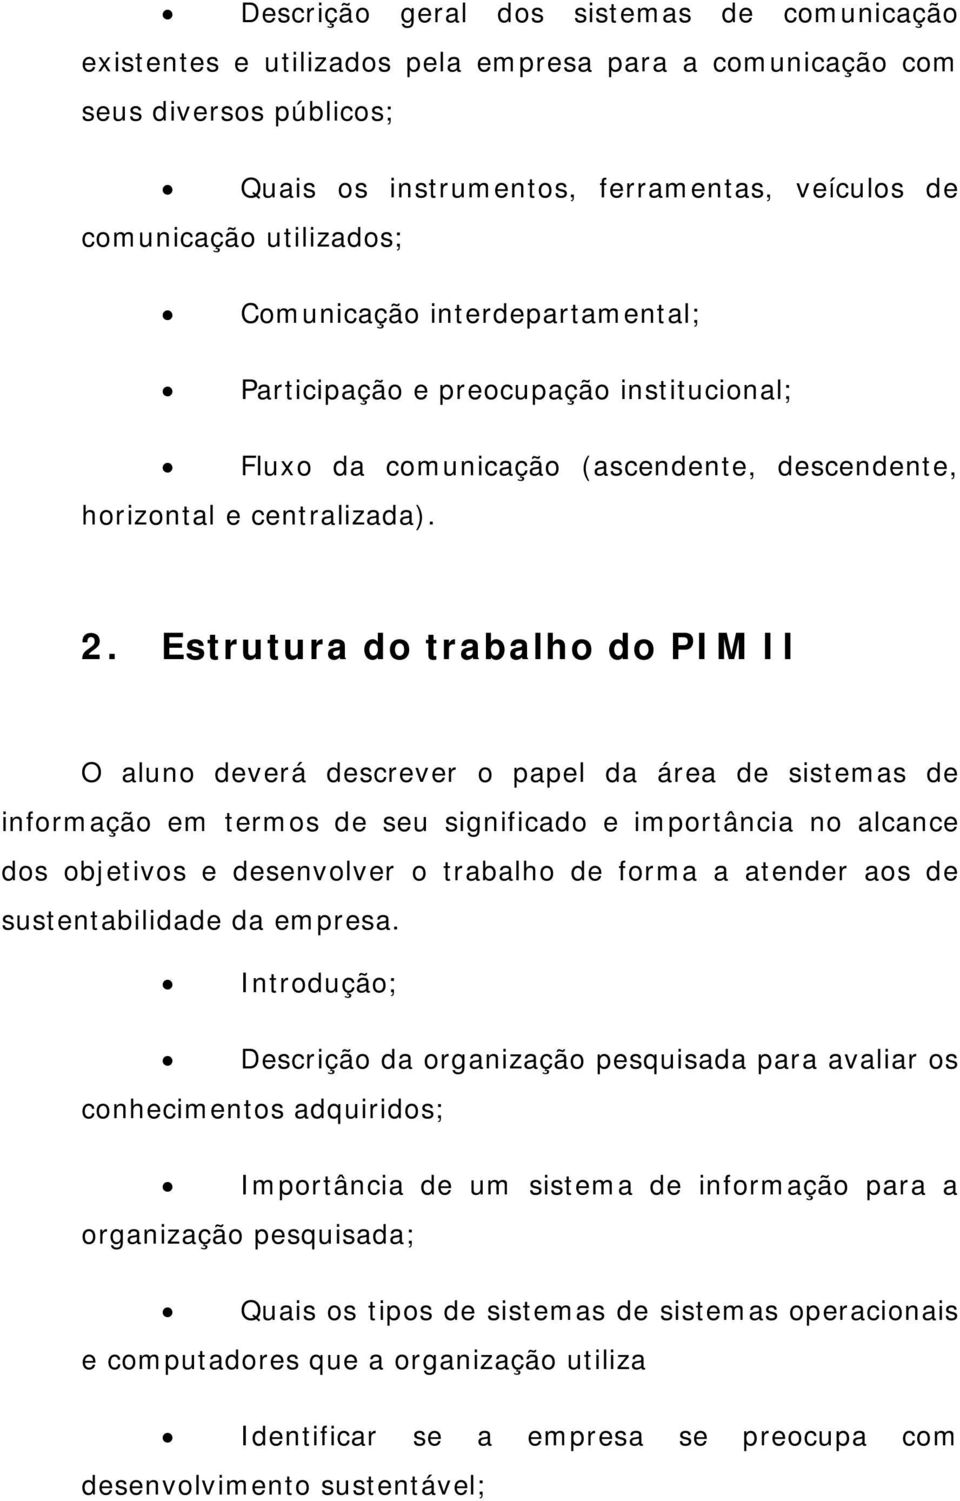 Estrutura do trabalho do PIM II O aluno deverá descrever o papel da área de sistemas de informação em termos de seu significado e importância no alcance dos objetivos e desenvolver o trabalho de